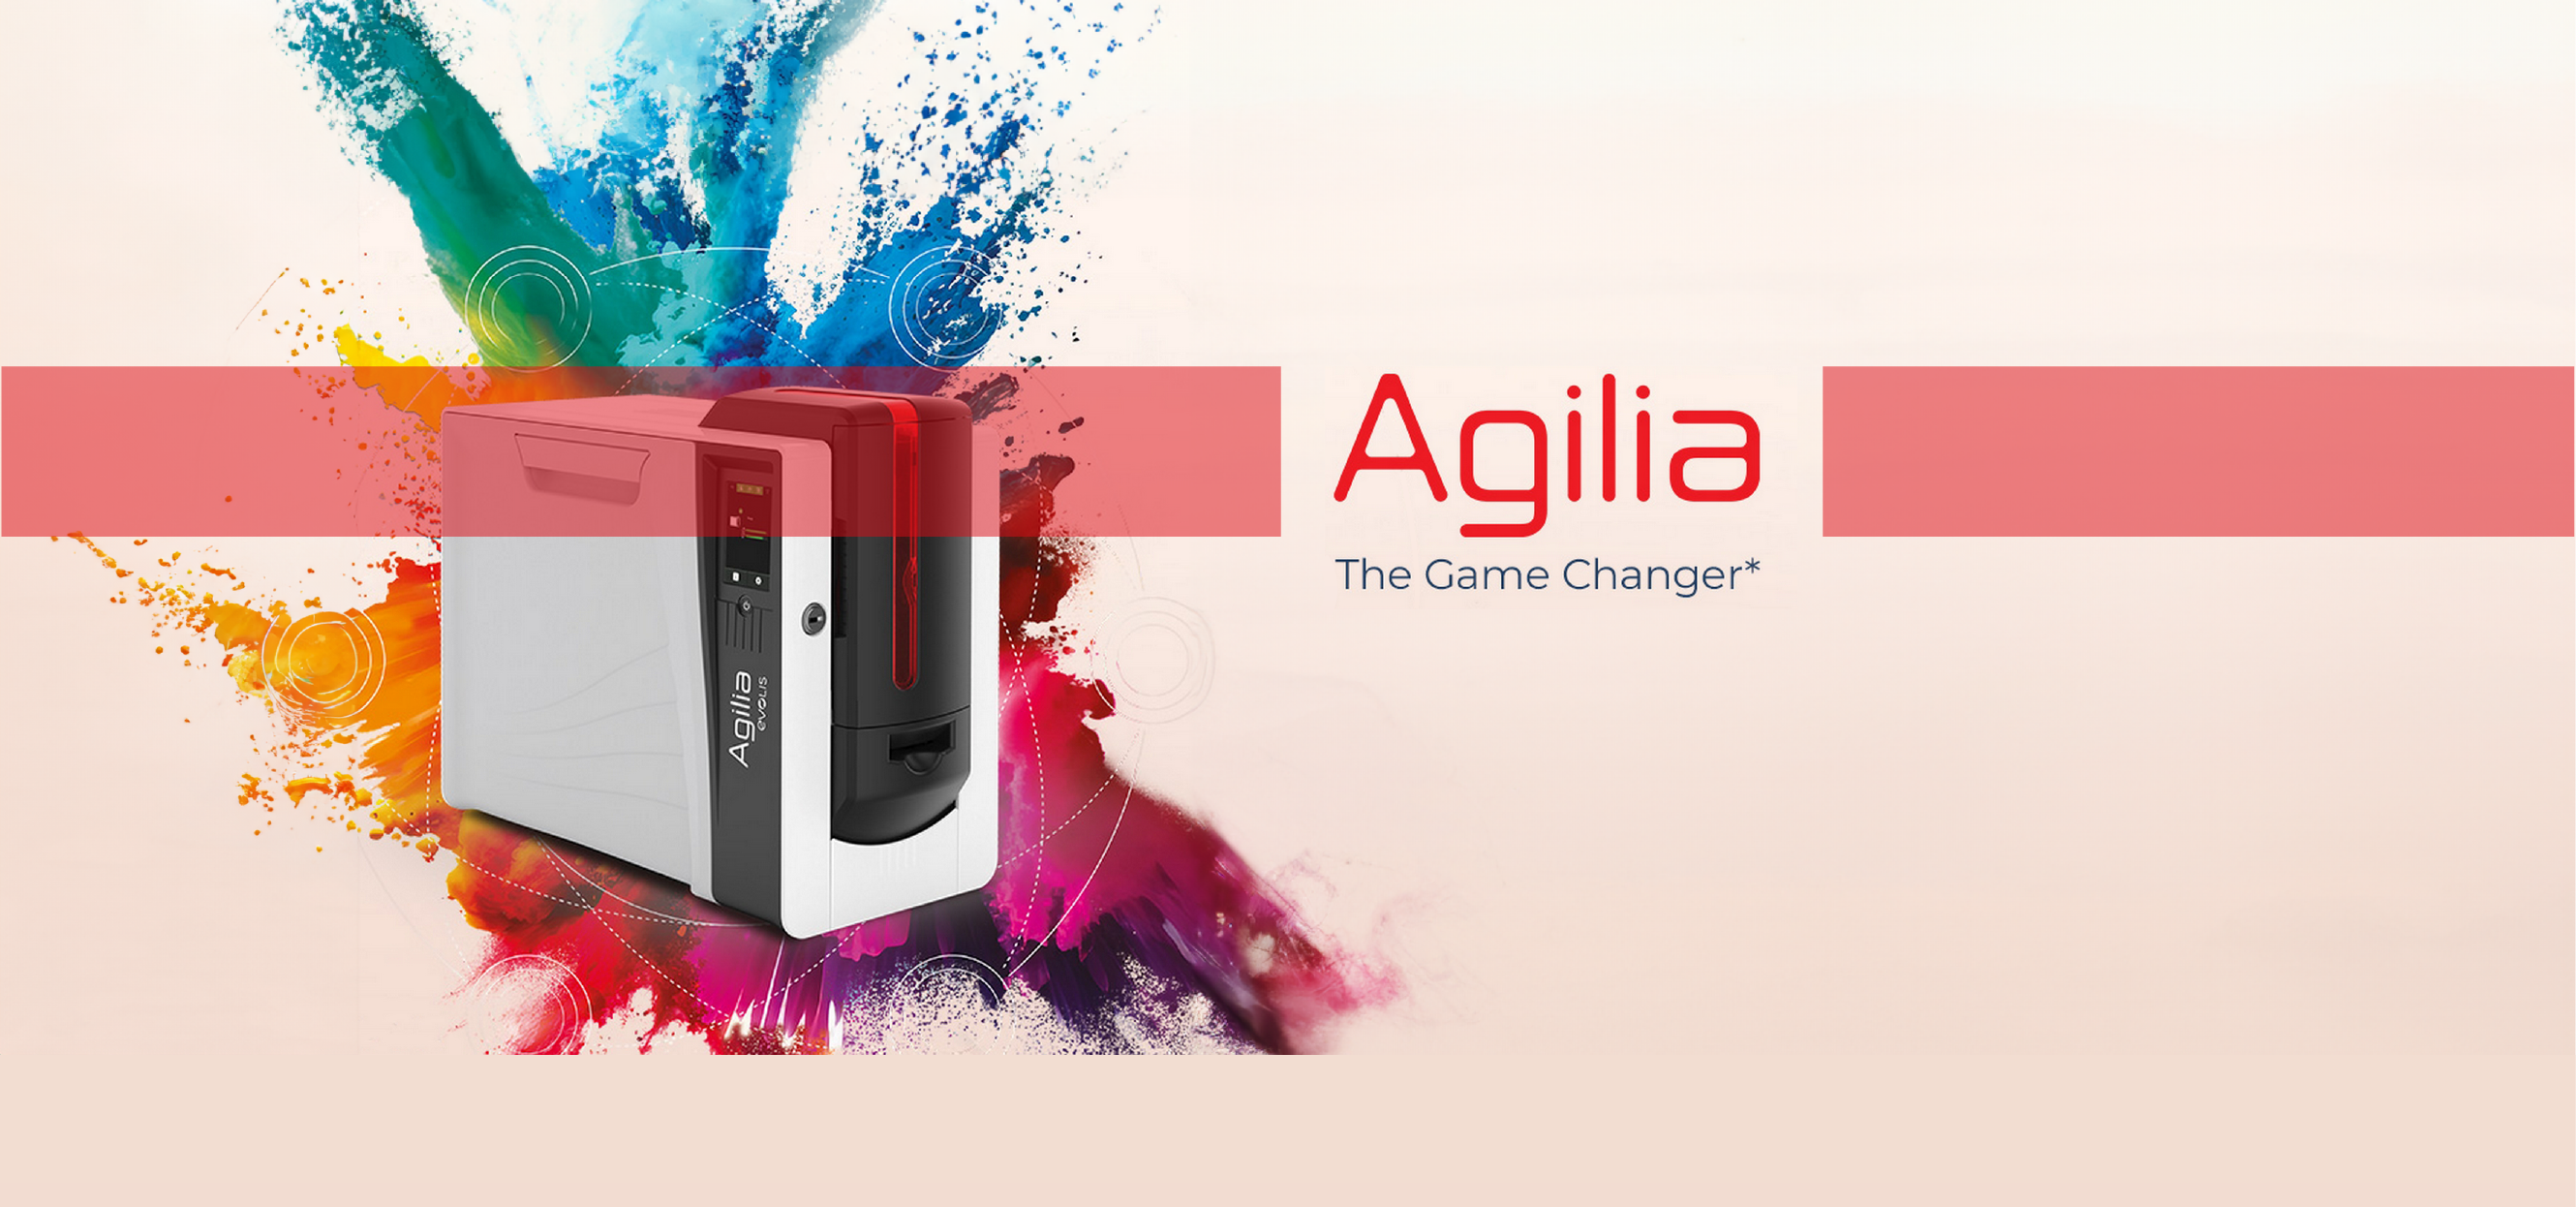 Agilia : Sécurité et Qualité d'Impression Optimales grâce à la Technologie Retransfert